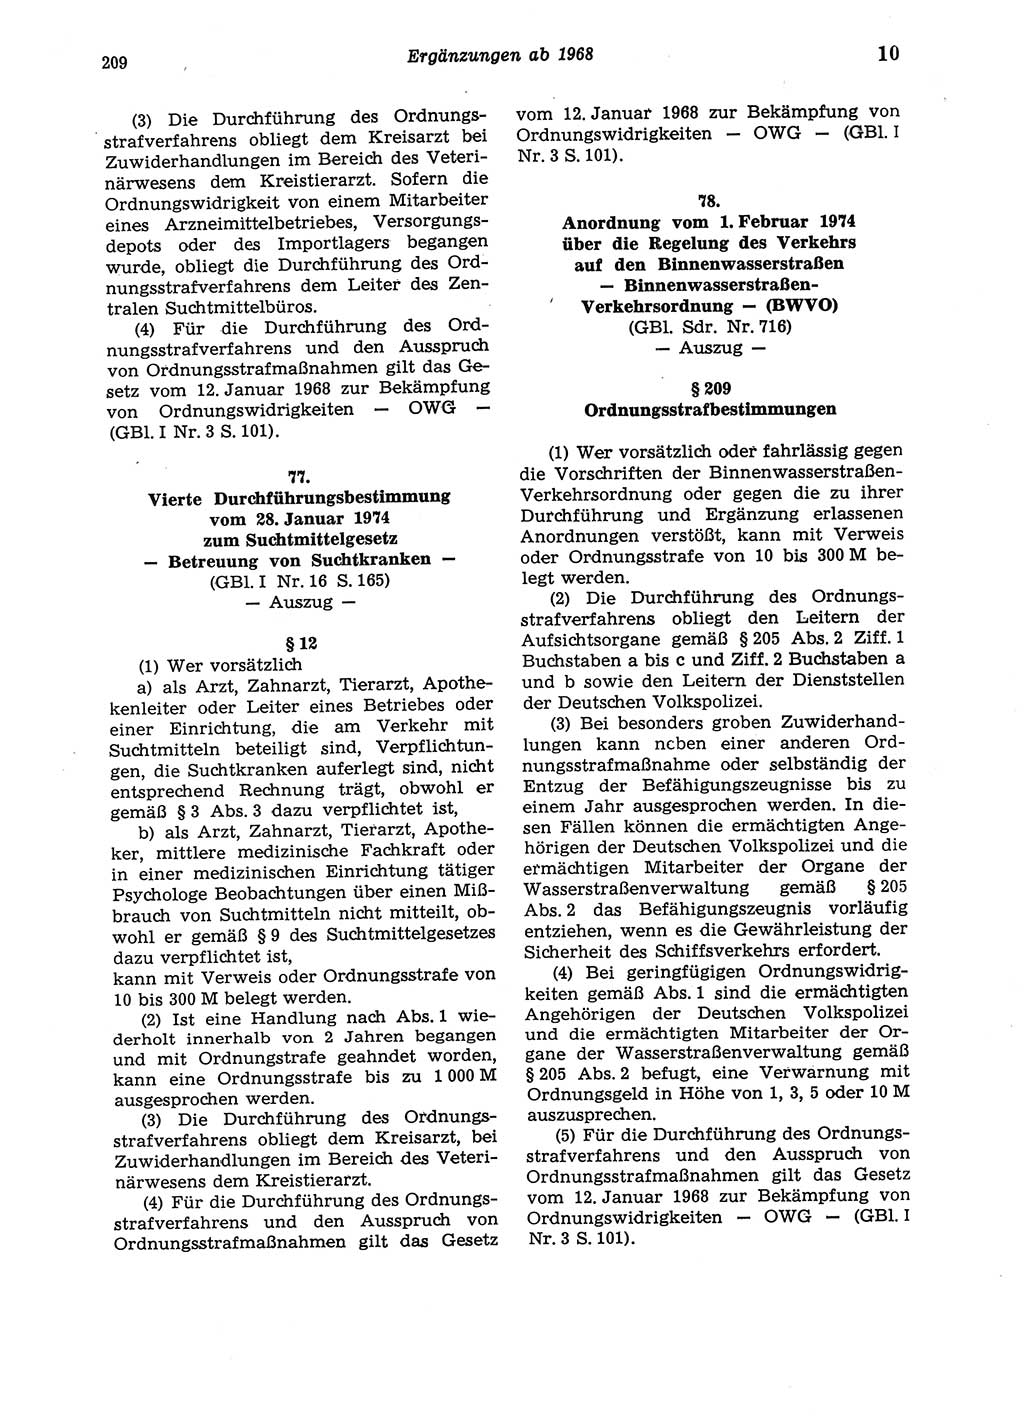 Strafgesetzbuch (StGB) der Deutschen Demokratischen Republik (DDR) und angrenzende Gesetze und Bestimmungen 1975, Seite 209 (StGB DDR Ges. Best. 1975, S. 209)